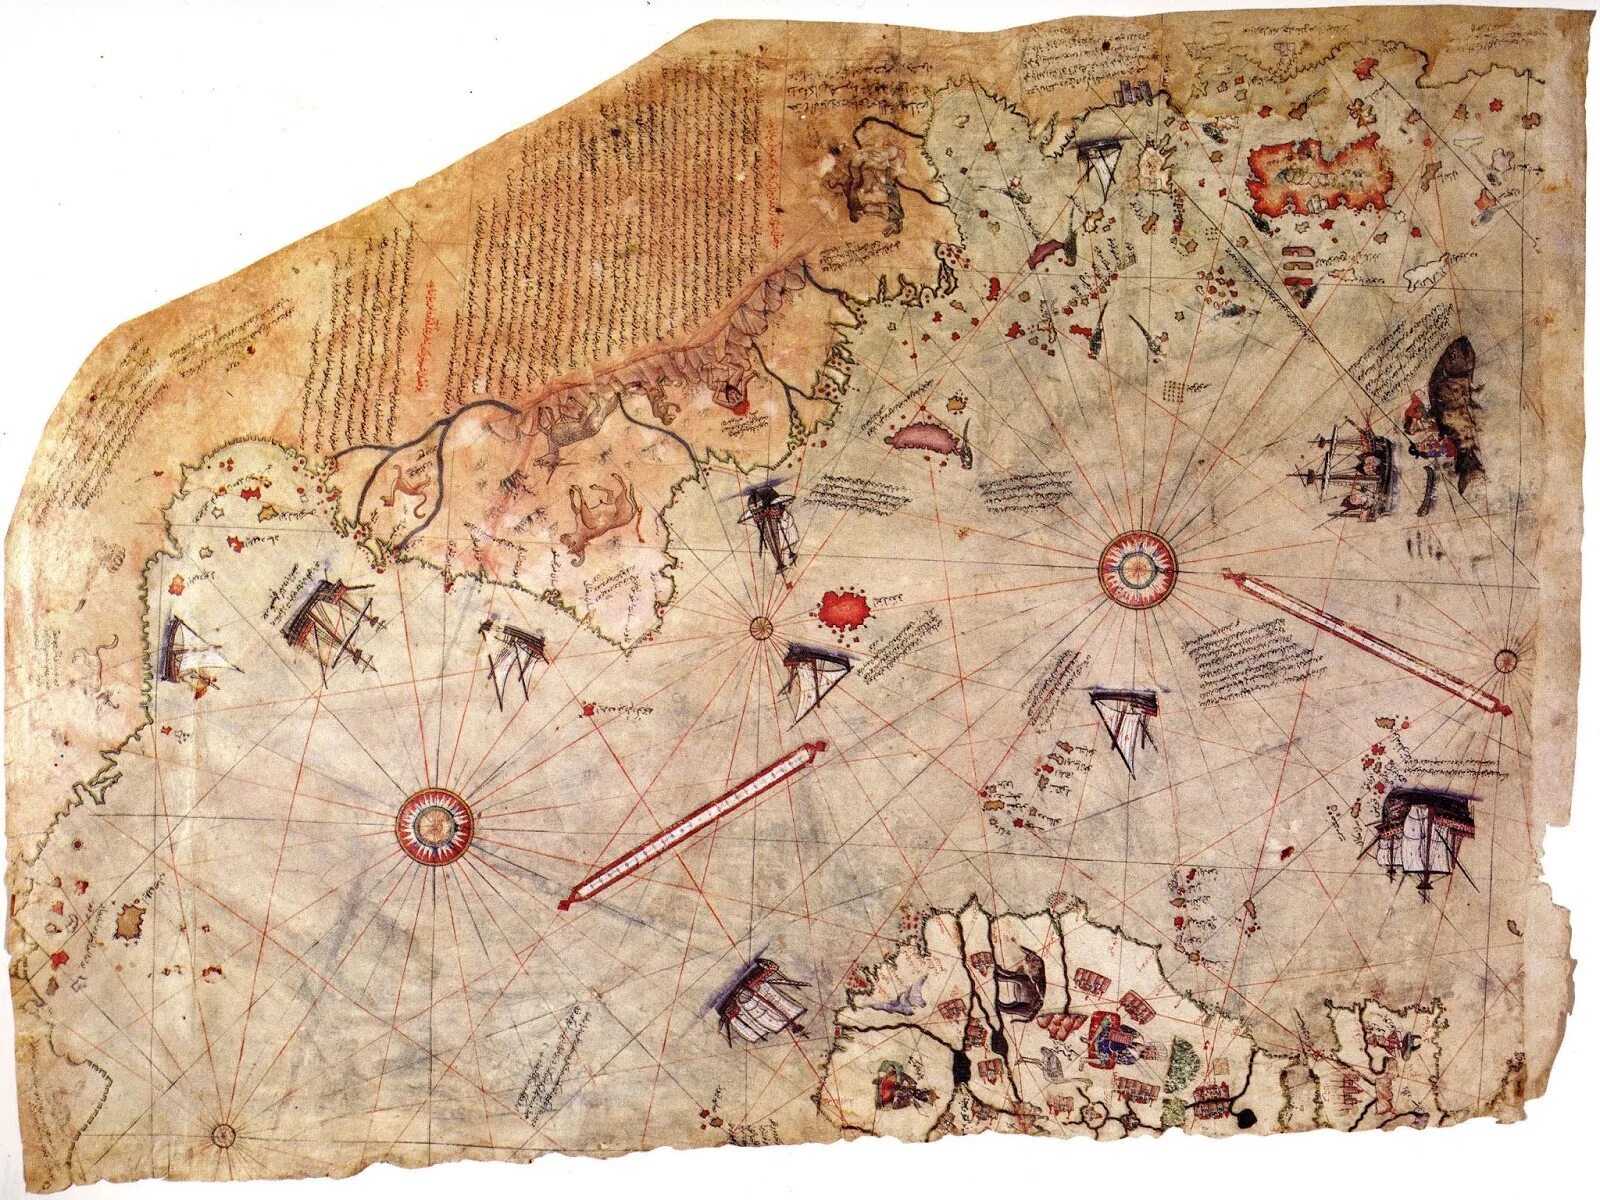 Карта Пири рейса Антарктида. Карта Пири рейса 1513 Антарктида. Карта турецкого мореплавателя Пири рейса. Самая древняя карта Антарктиды.